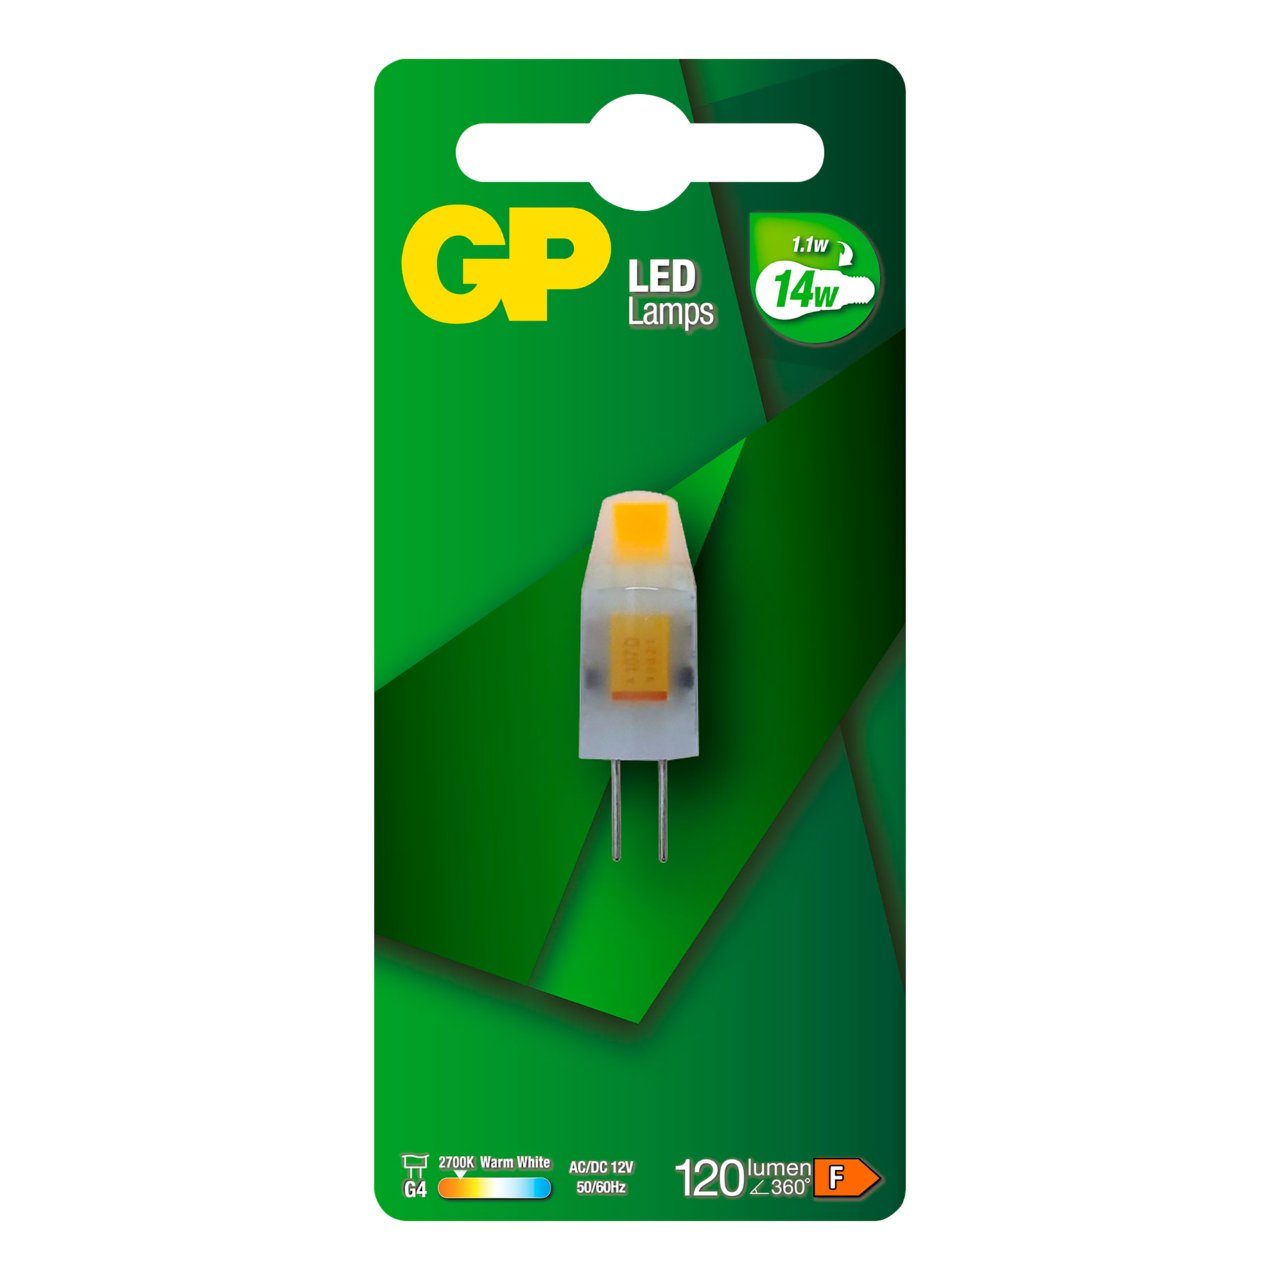 Led lamp GP 085973 G4 capsule